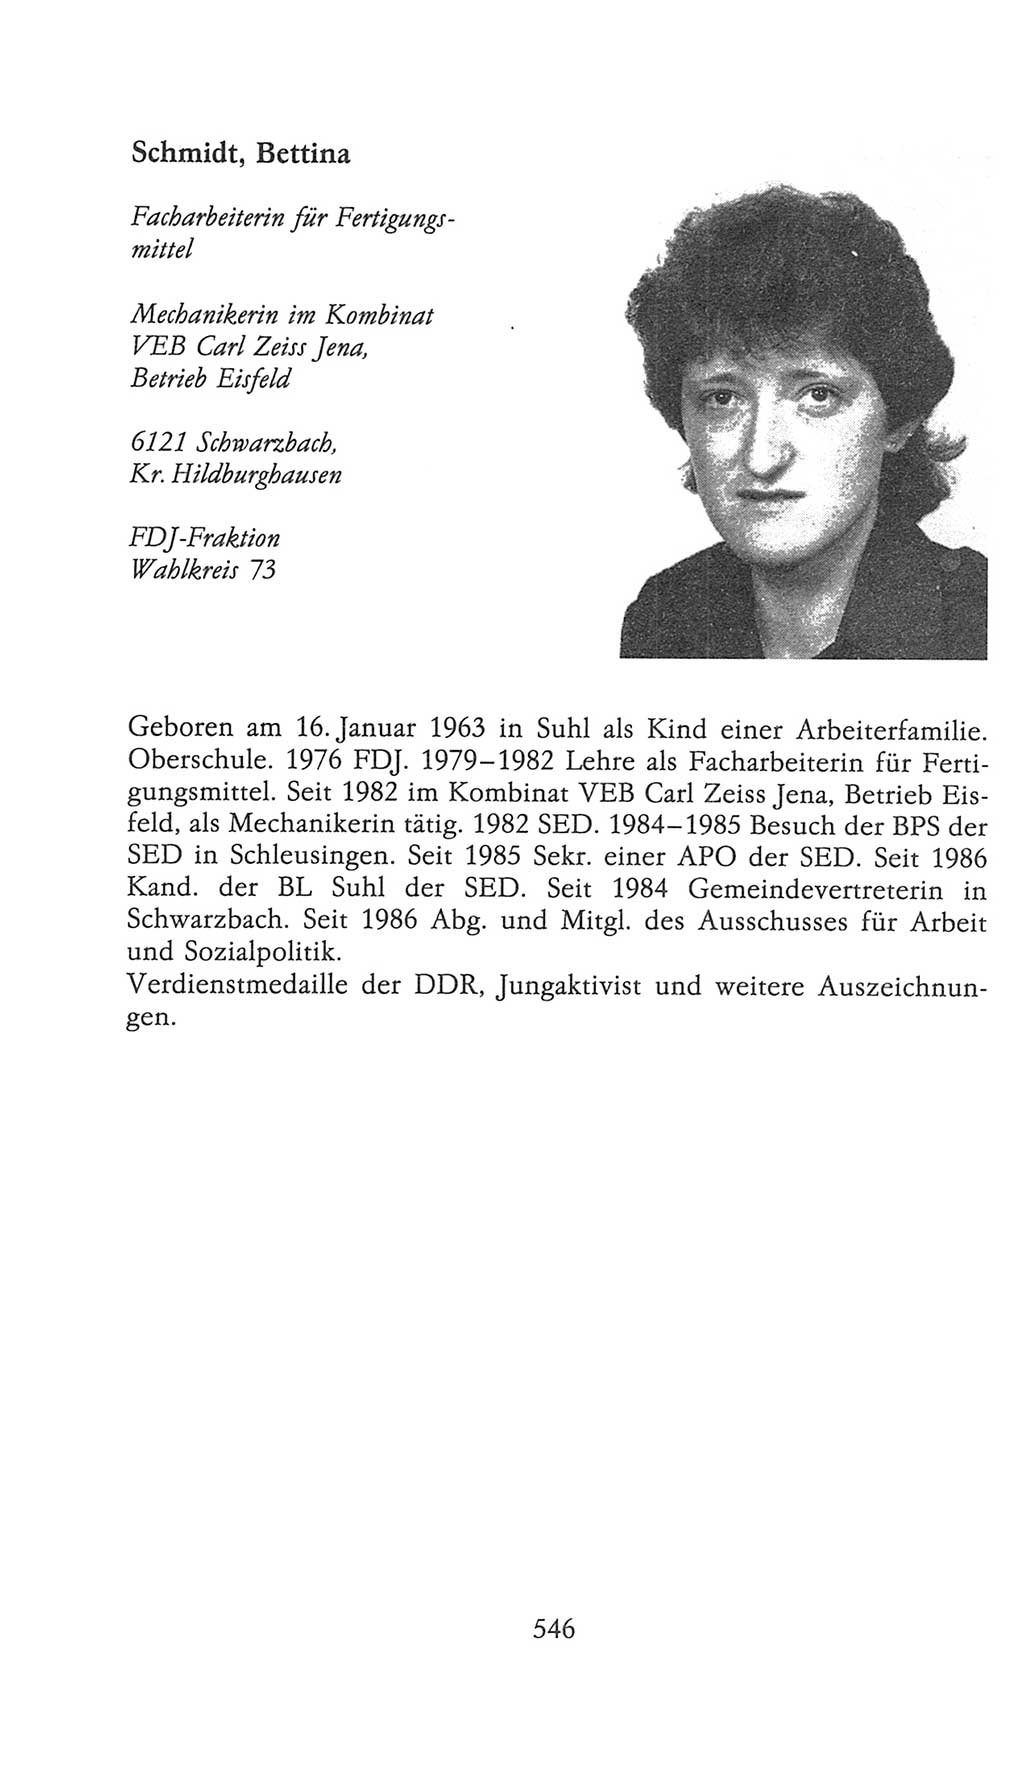 Volkskammer (VK) der Deutschen Demokratischen Republik (DDR), 9. Wahlperiode 1986-1990, Seite 546 (VK. DDR 9. WP. 1986-1990, S. 546)